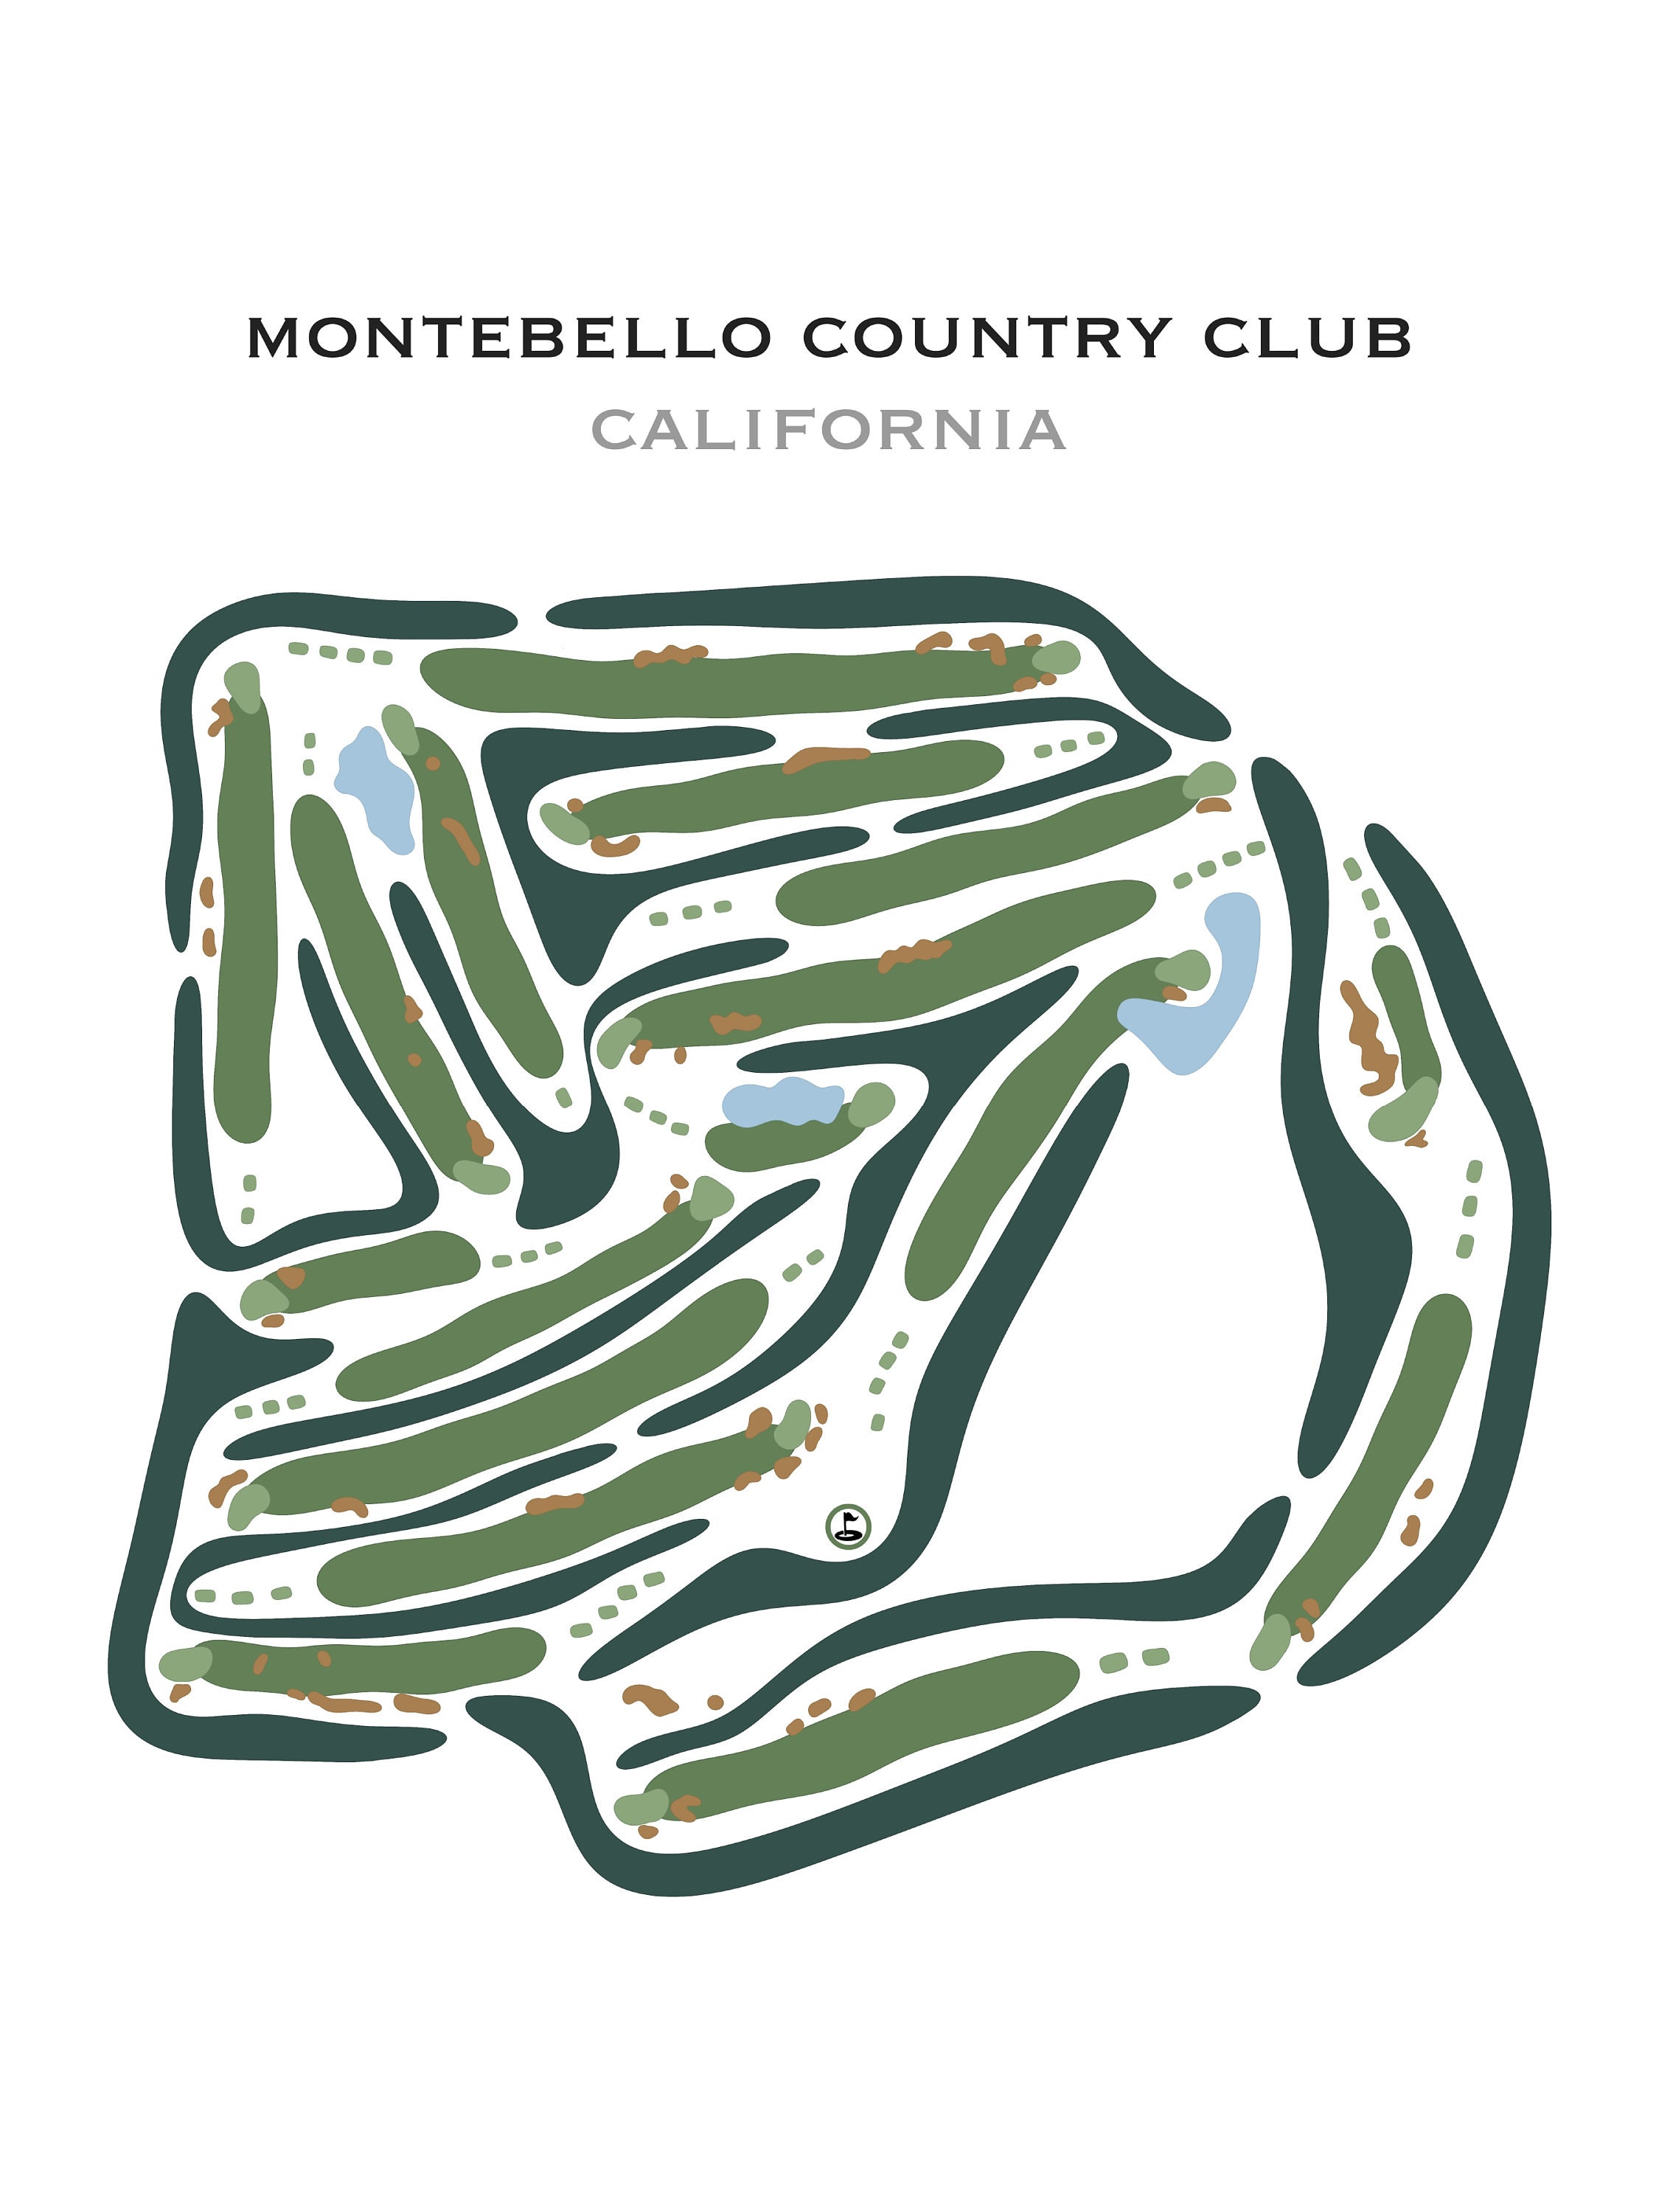 Montebello Country Club CA / Mapa del campo de golf - Etsy España